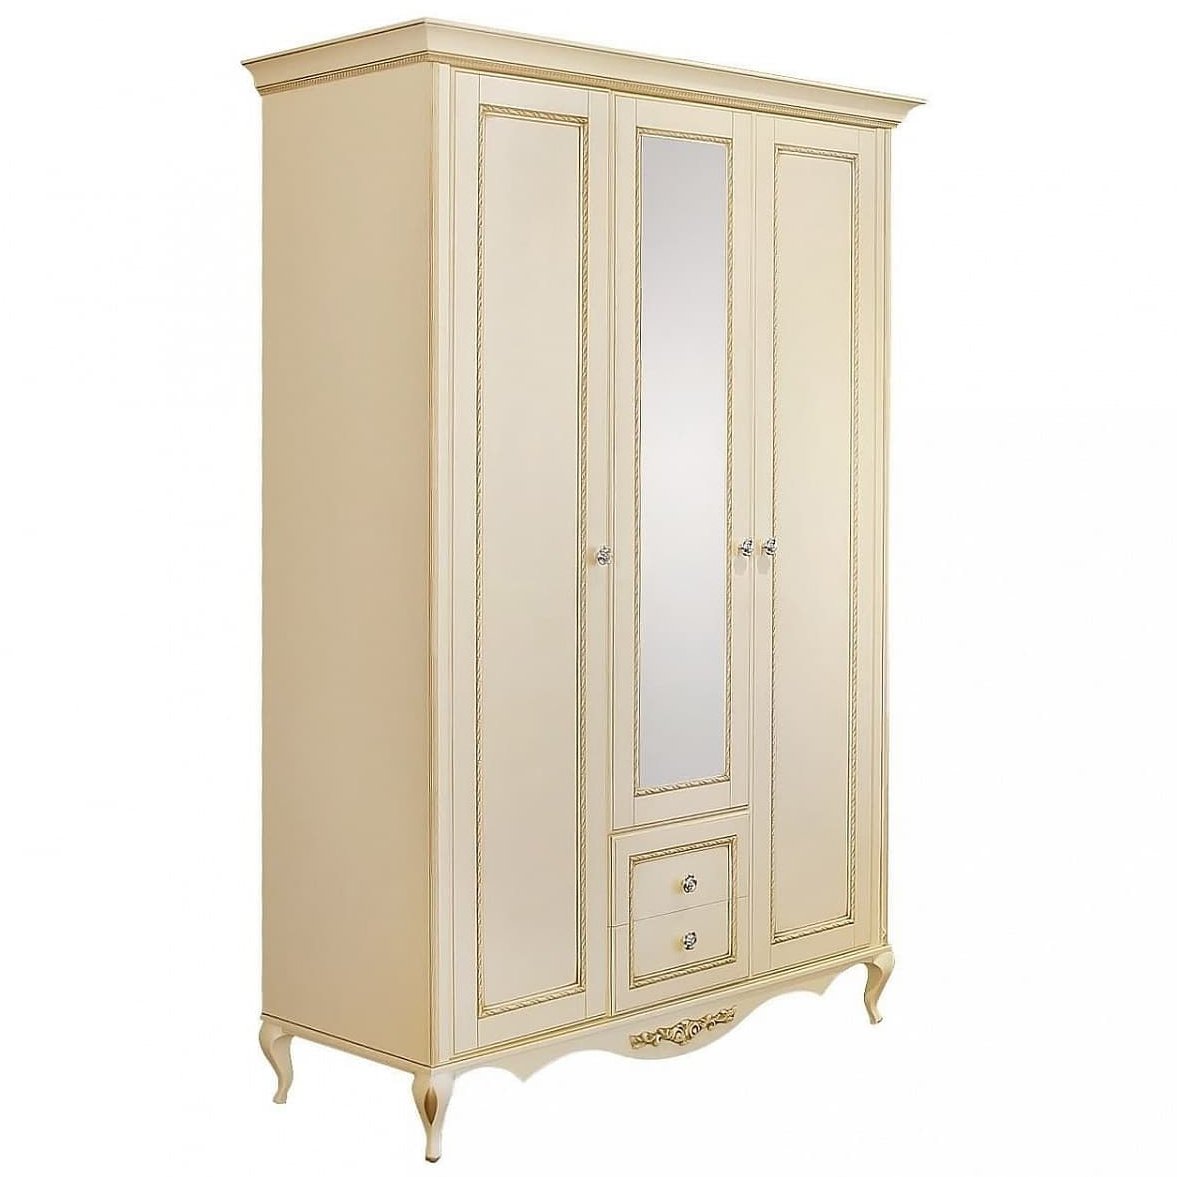 Шкаф платяной Timber Неаполь, 3-х дверный с зеркалом 159x65x227 см, цвет: ваниль с золотом (Т-523/VO)Т-523